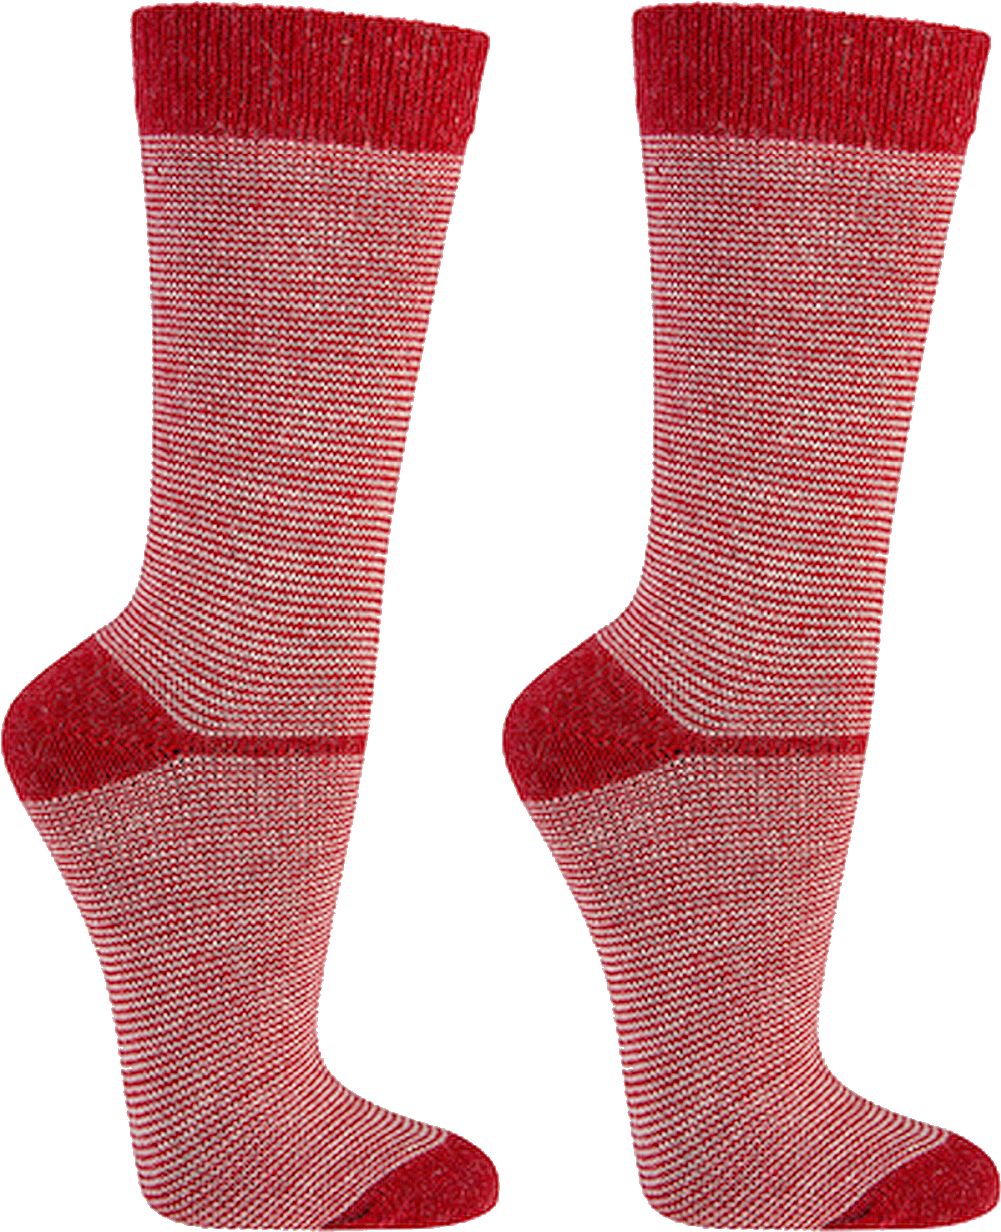  Damen Socken mit Merino und Alpakawolle Ringelmotiv in schönen  Trendfarben EDLER AUSFÜHRUNG  2 Paar